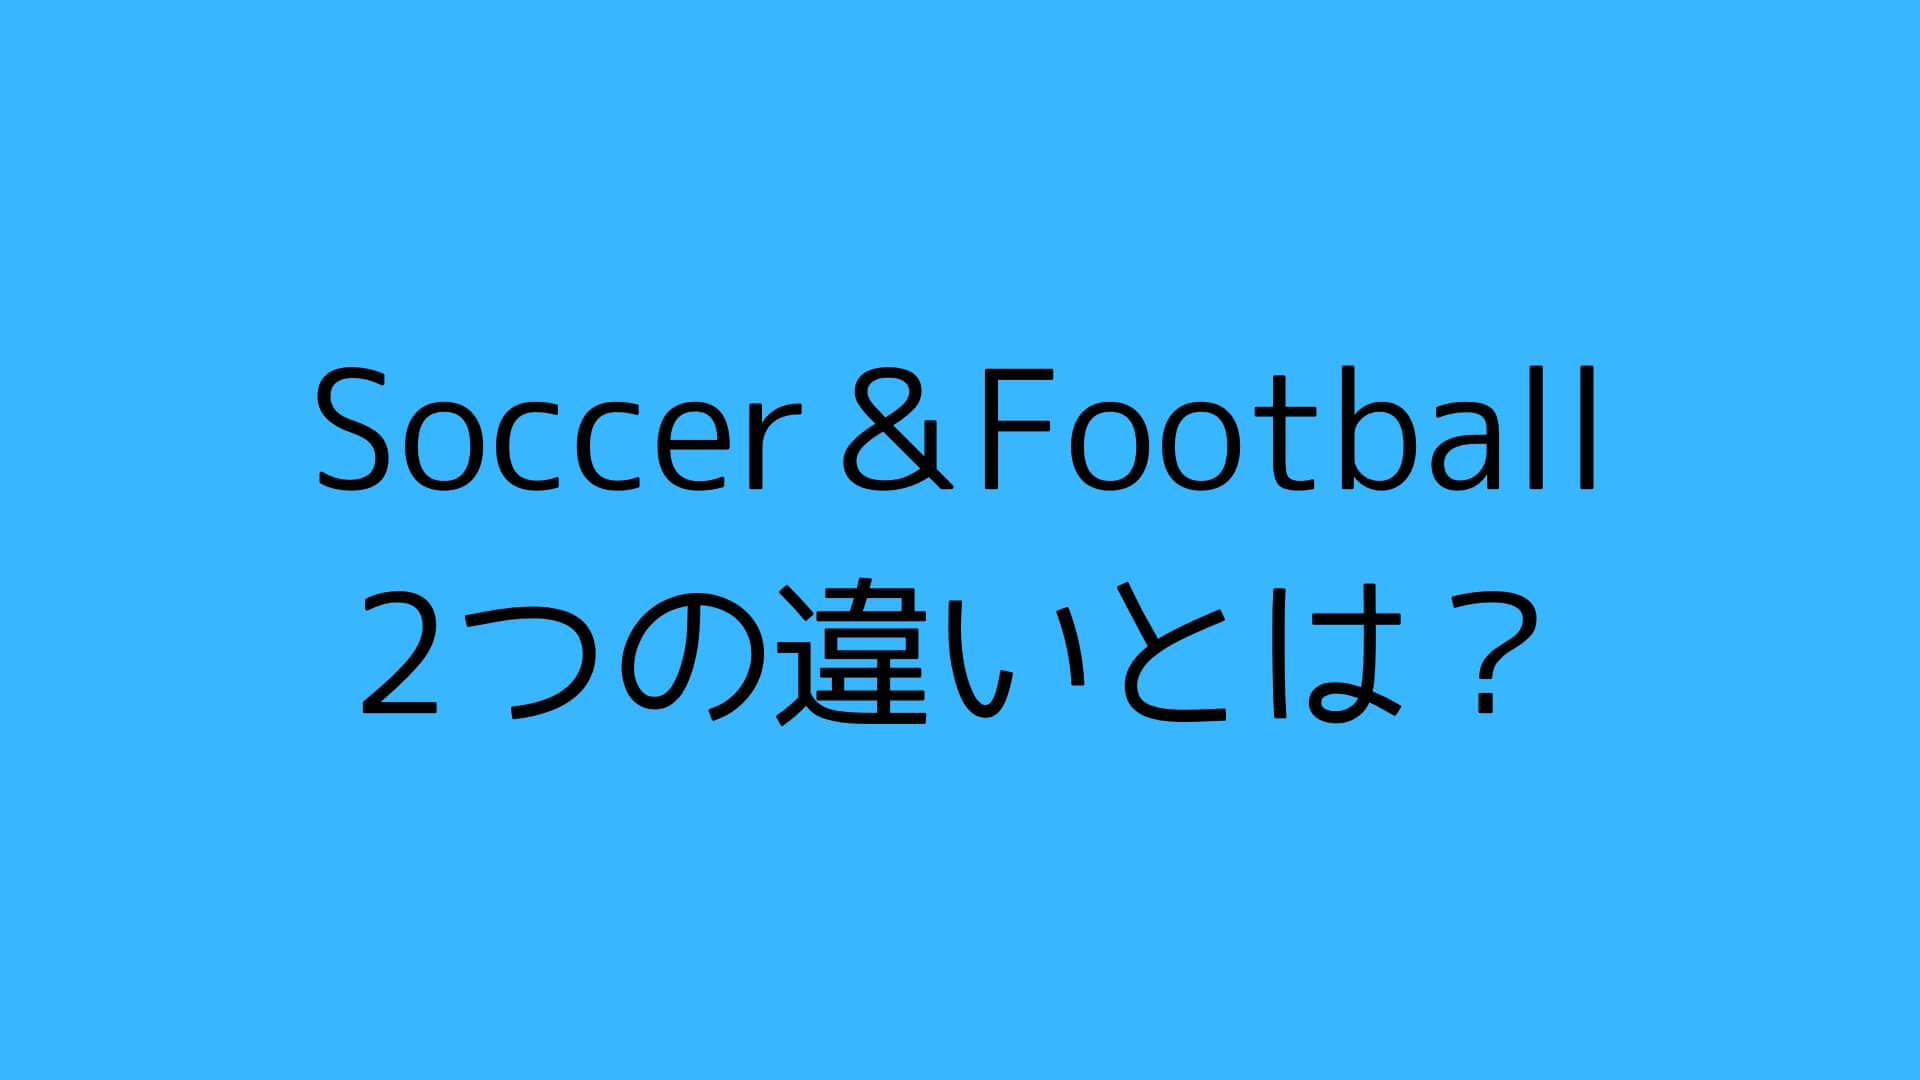 サッカーとフットボールの呼び方に違いがあるのはなぜ Kohei55